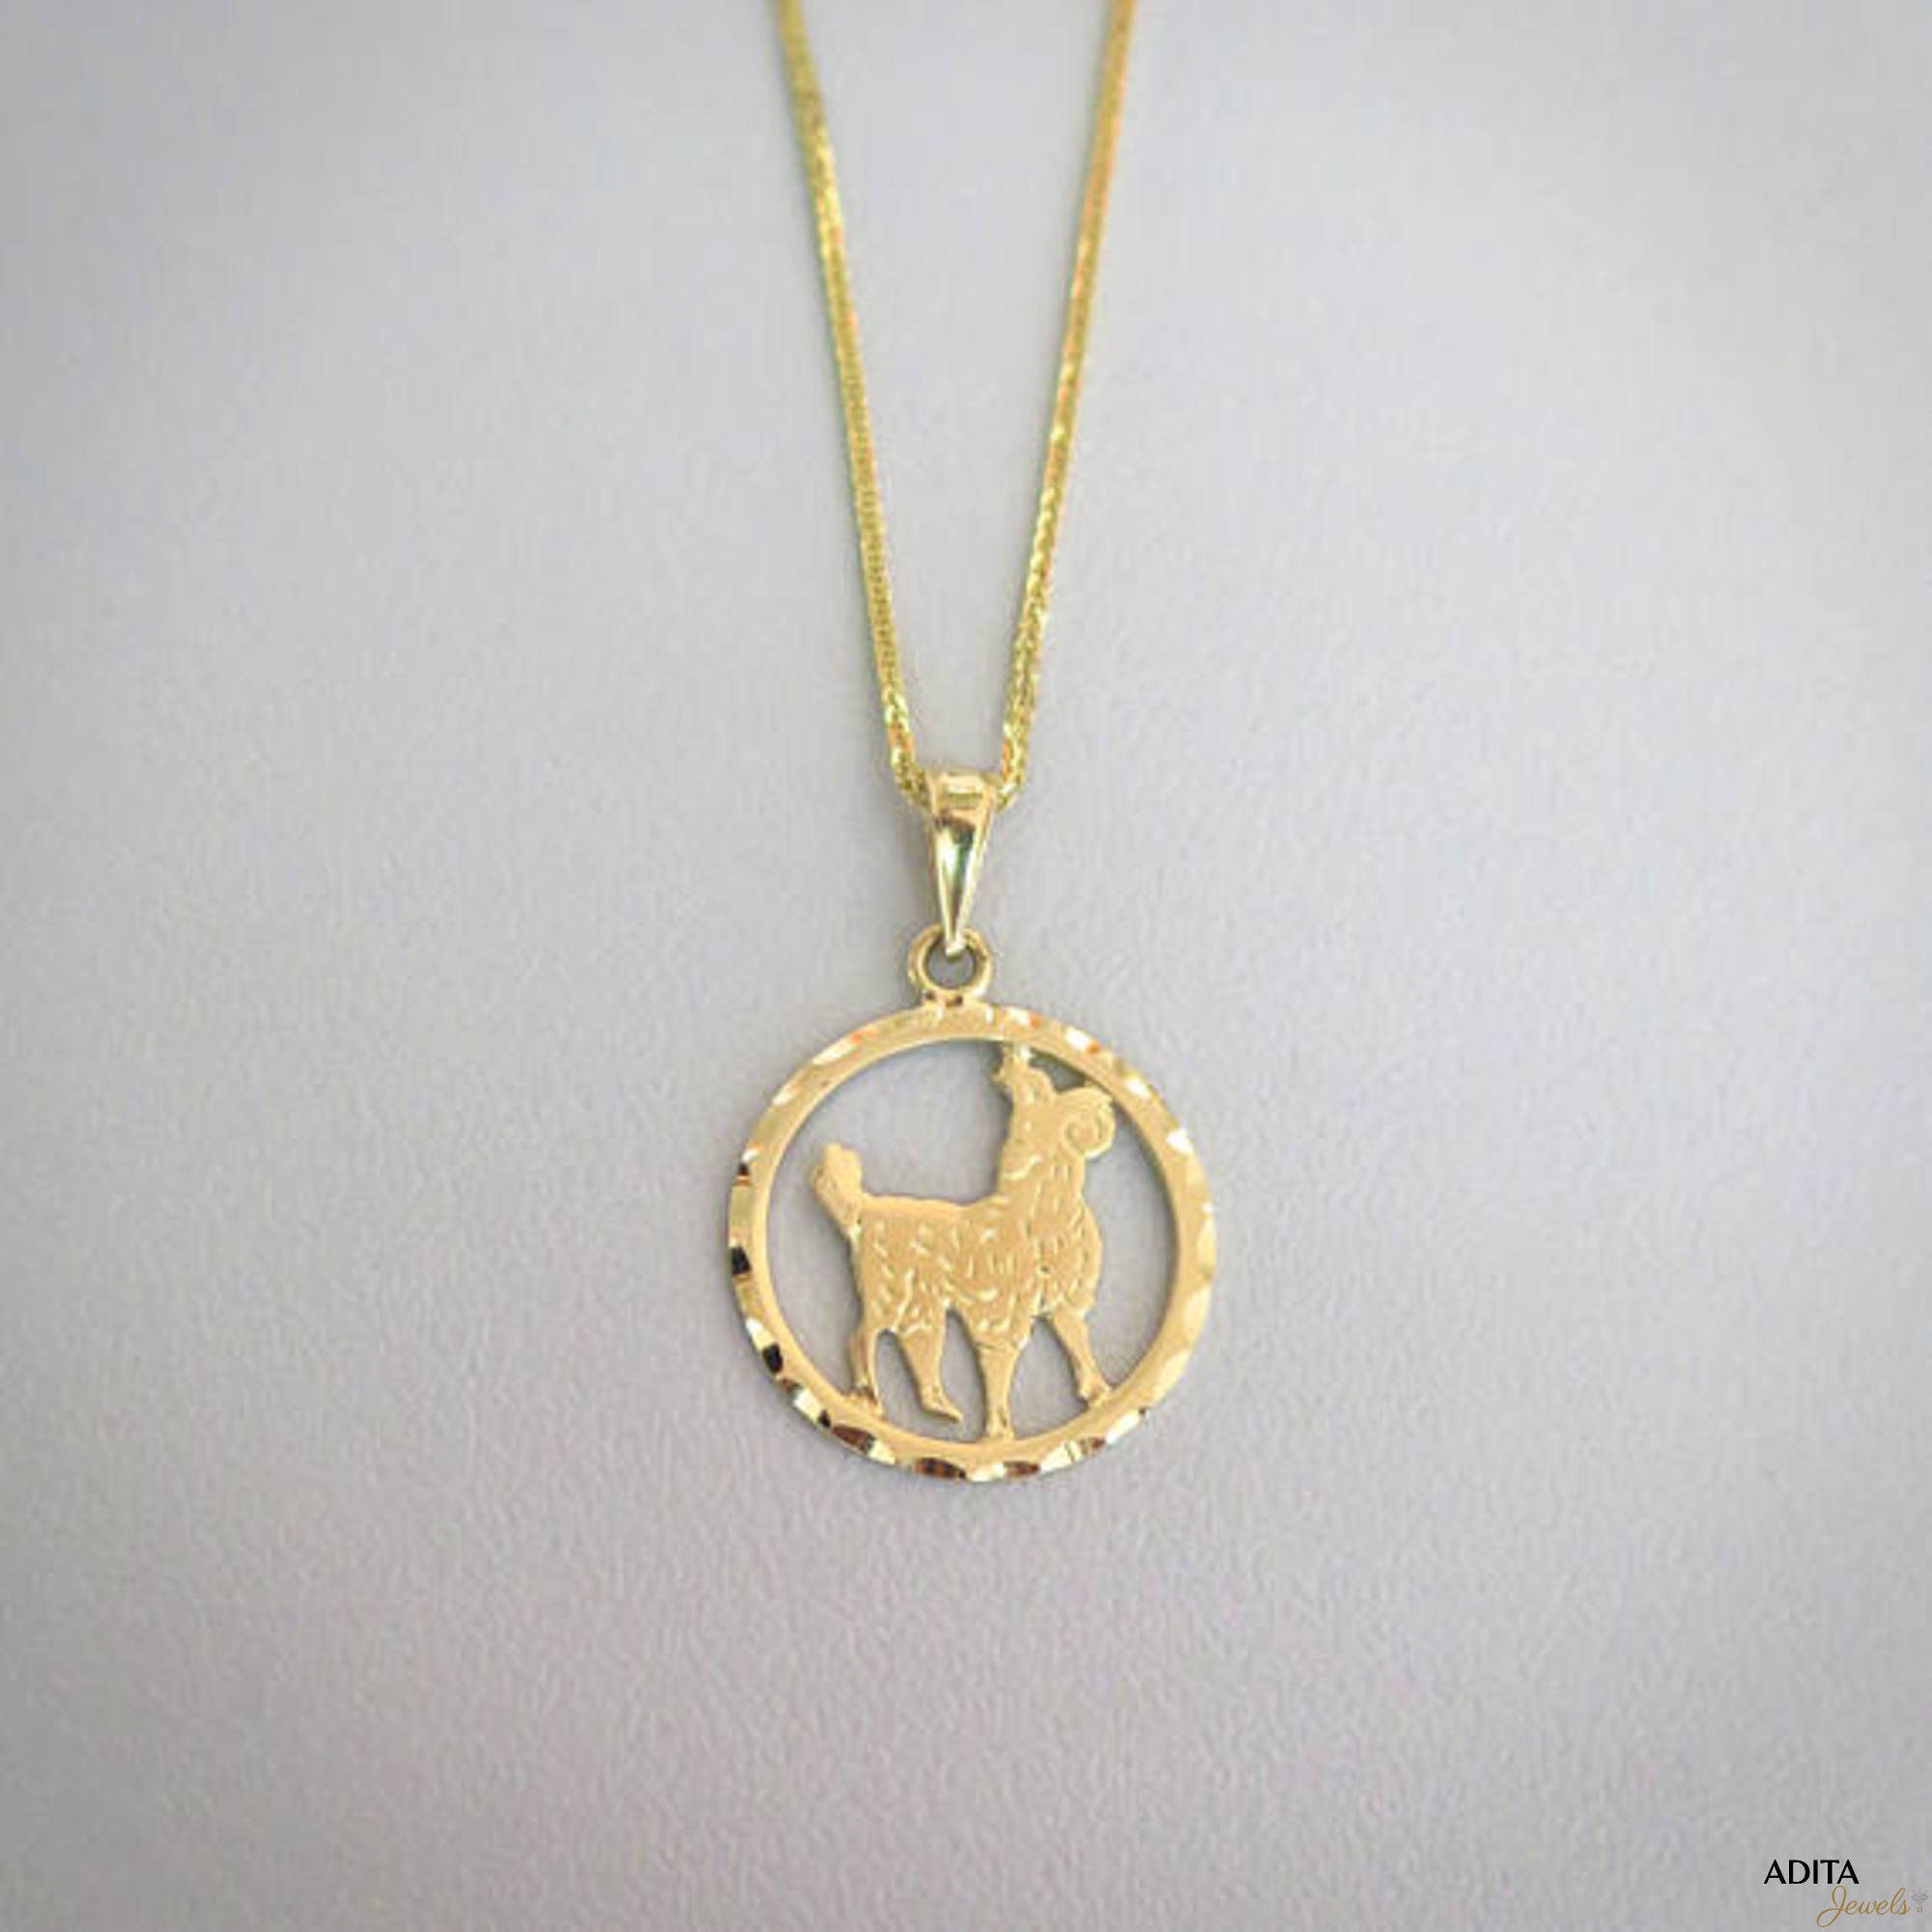 Gold Aries Necklace Aries Necklace Gold Aries Pendant | Etsy